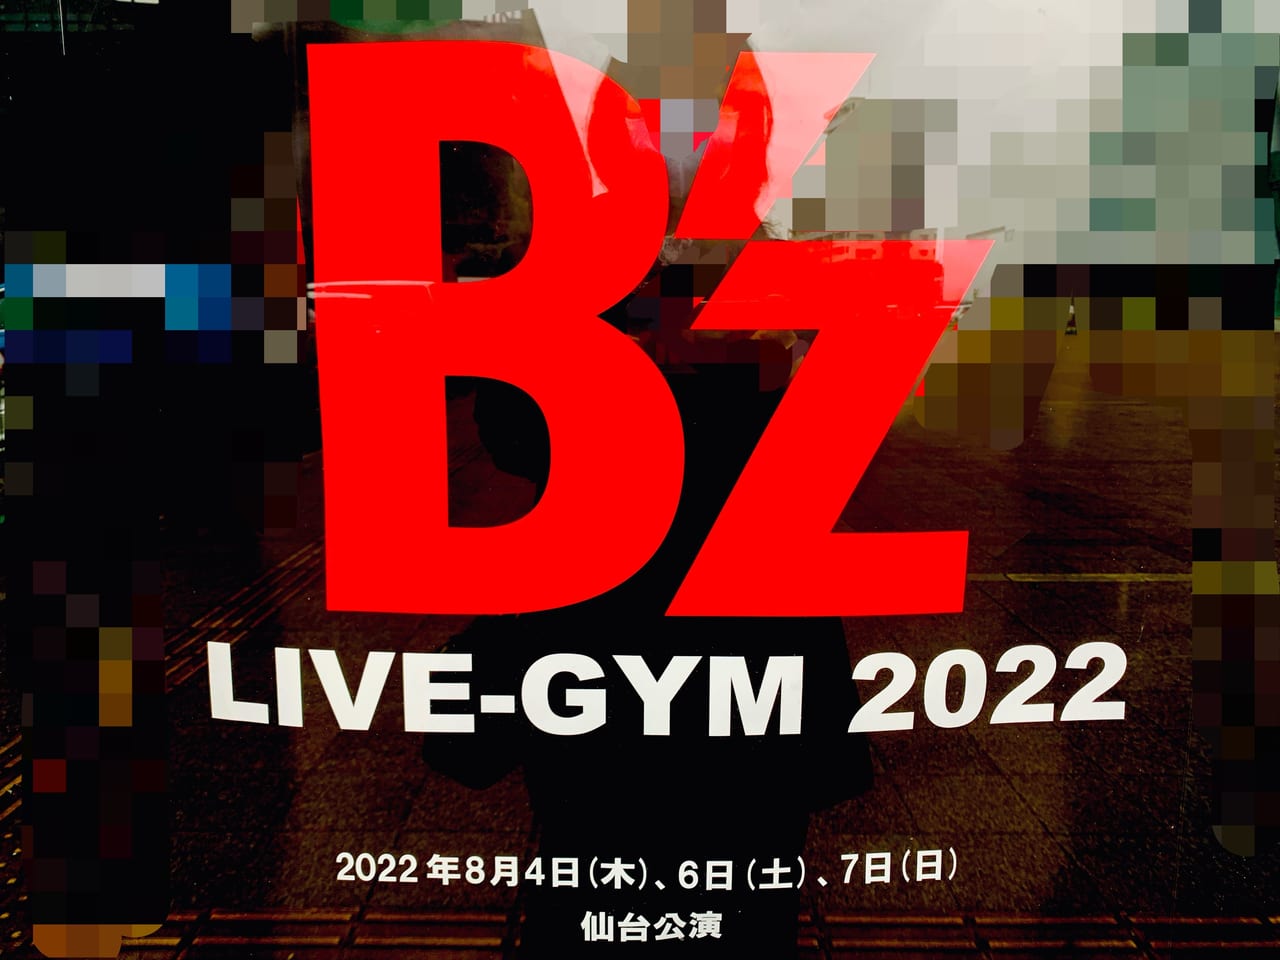 B’z LIVE-GYM 2022